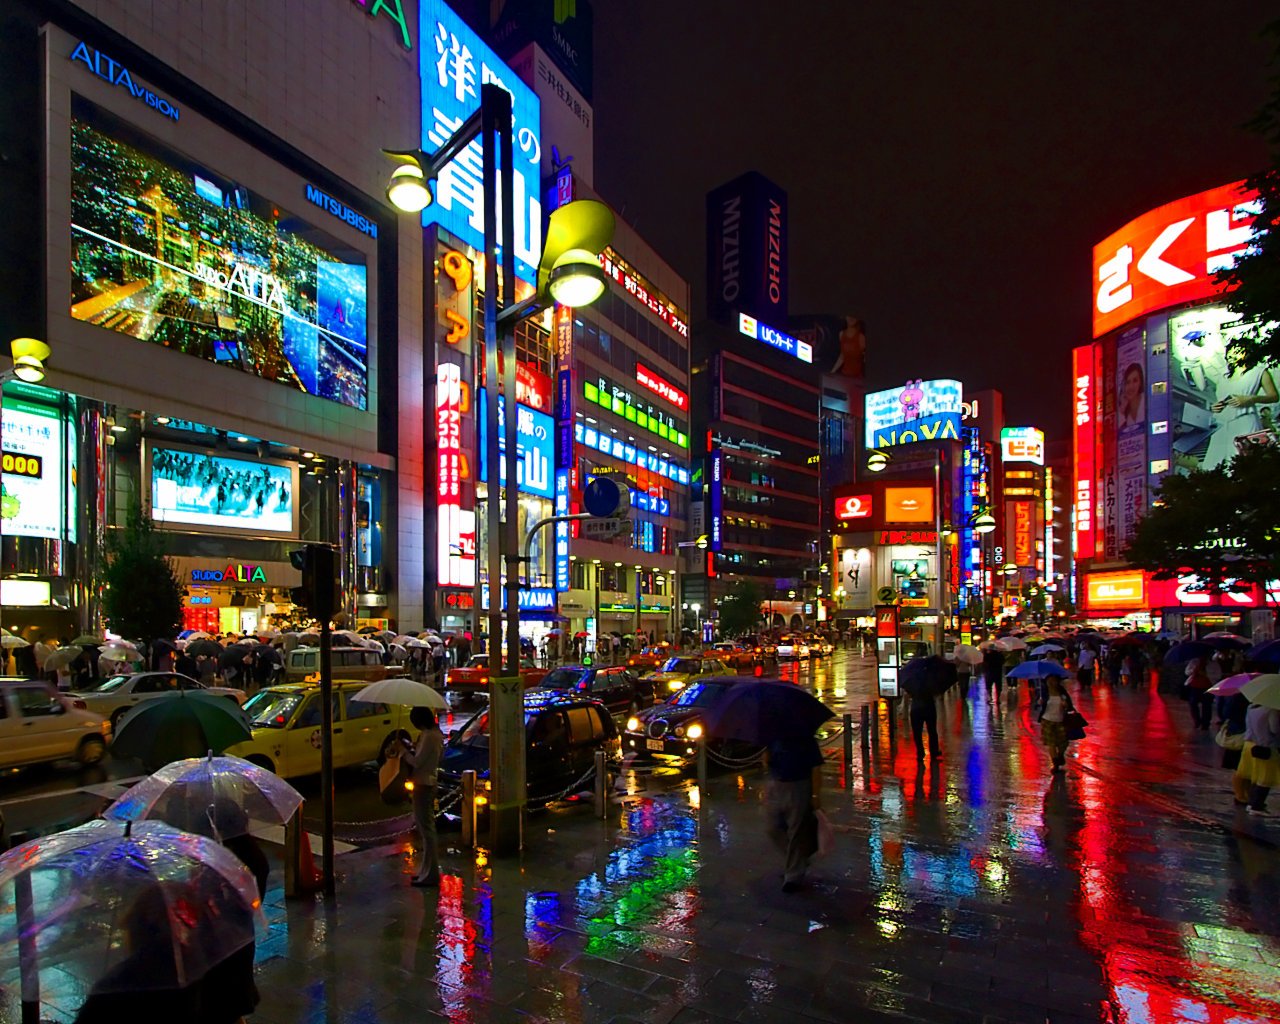 Tokyo City At Night - 1280x1024 Wallpaper 